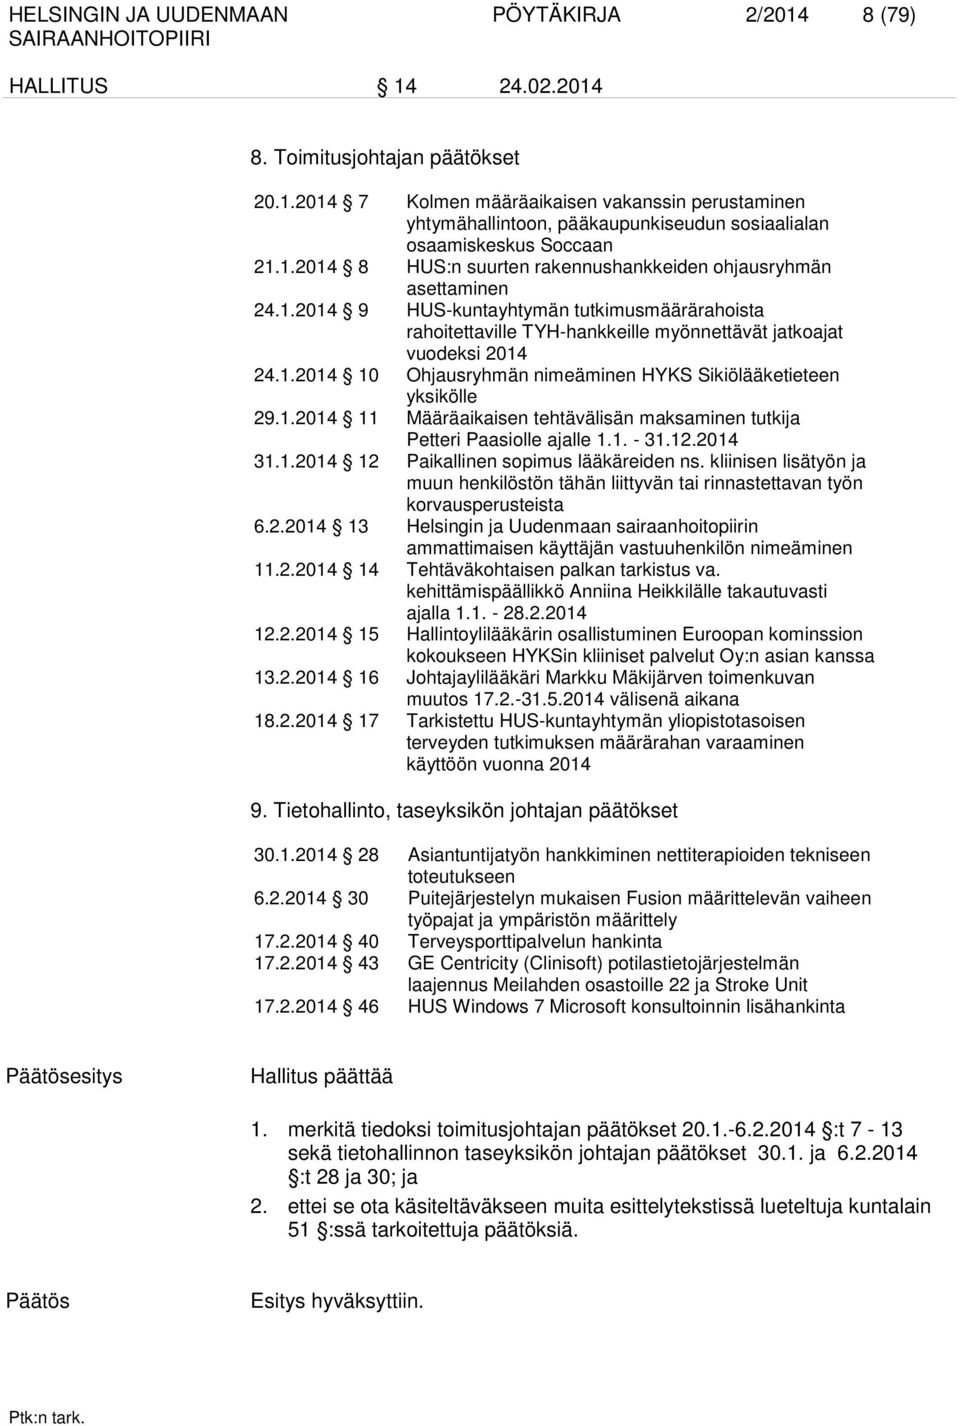 1.2014 11 Määräaikaisen tehtävälisän maksaminen tutkija Petteri Paasiolle ajalle 1.1. - 31.12.2014 31.1.2014 12 Paikallinen sopimus lääkäreiden ns.